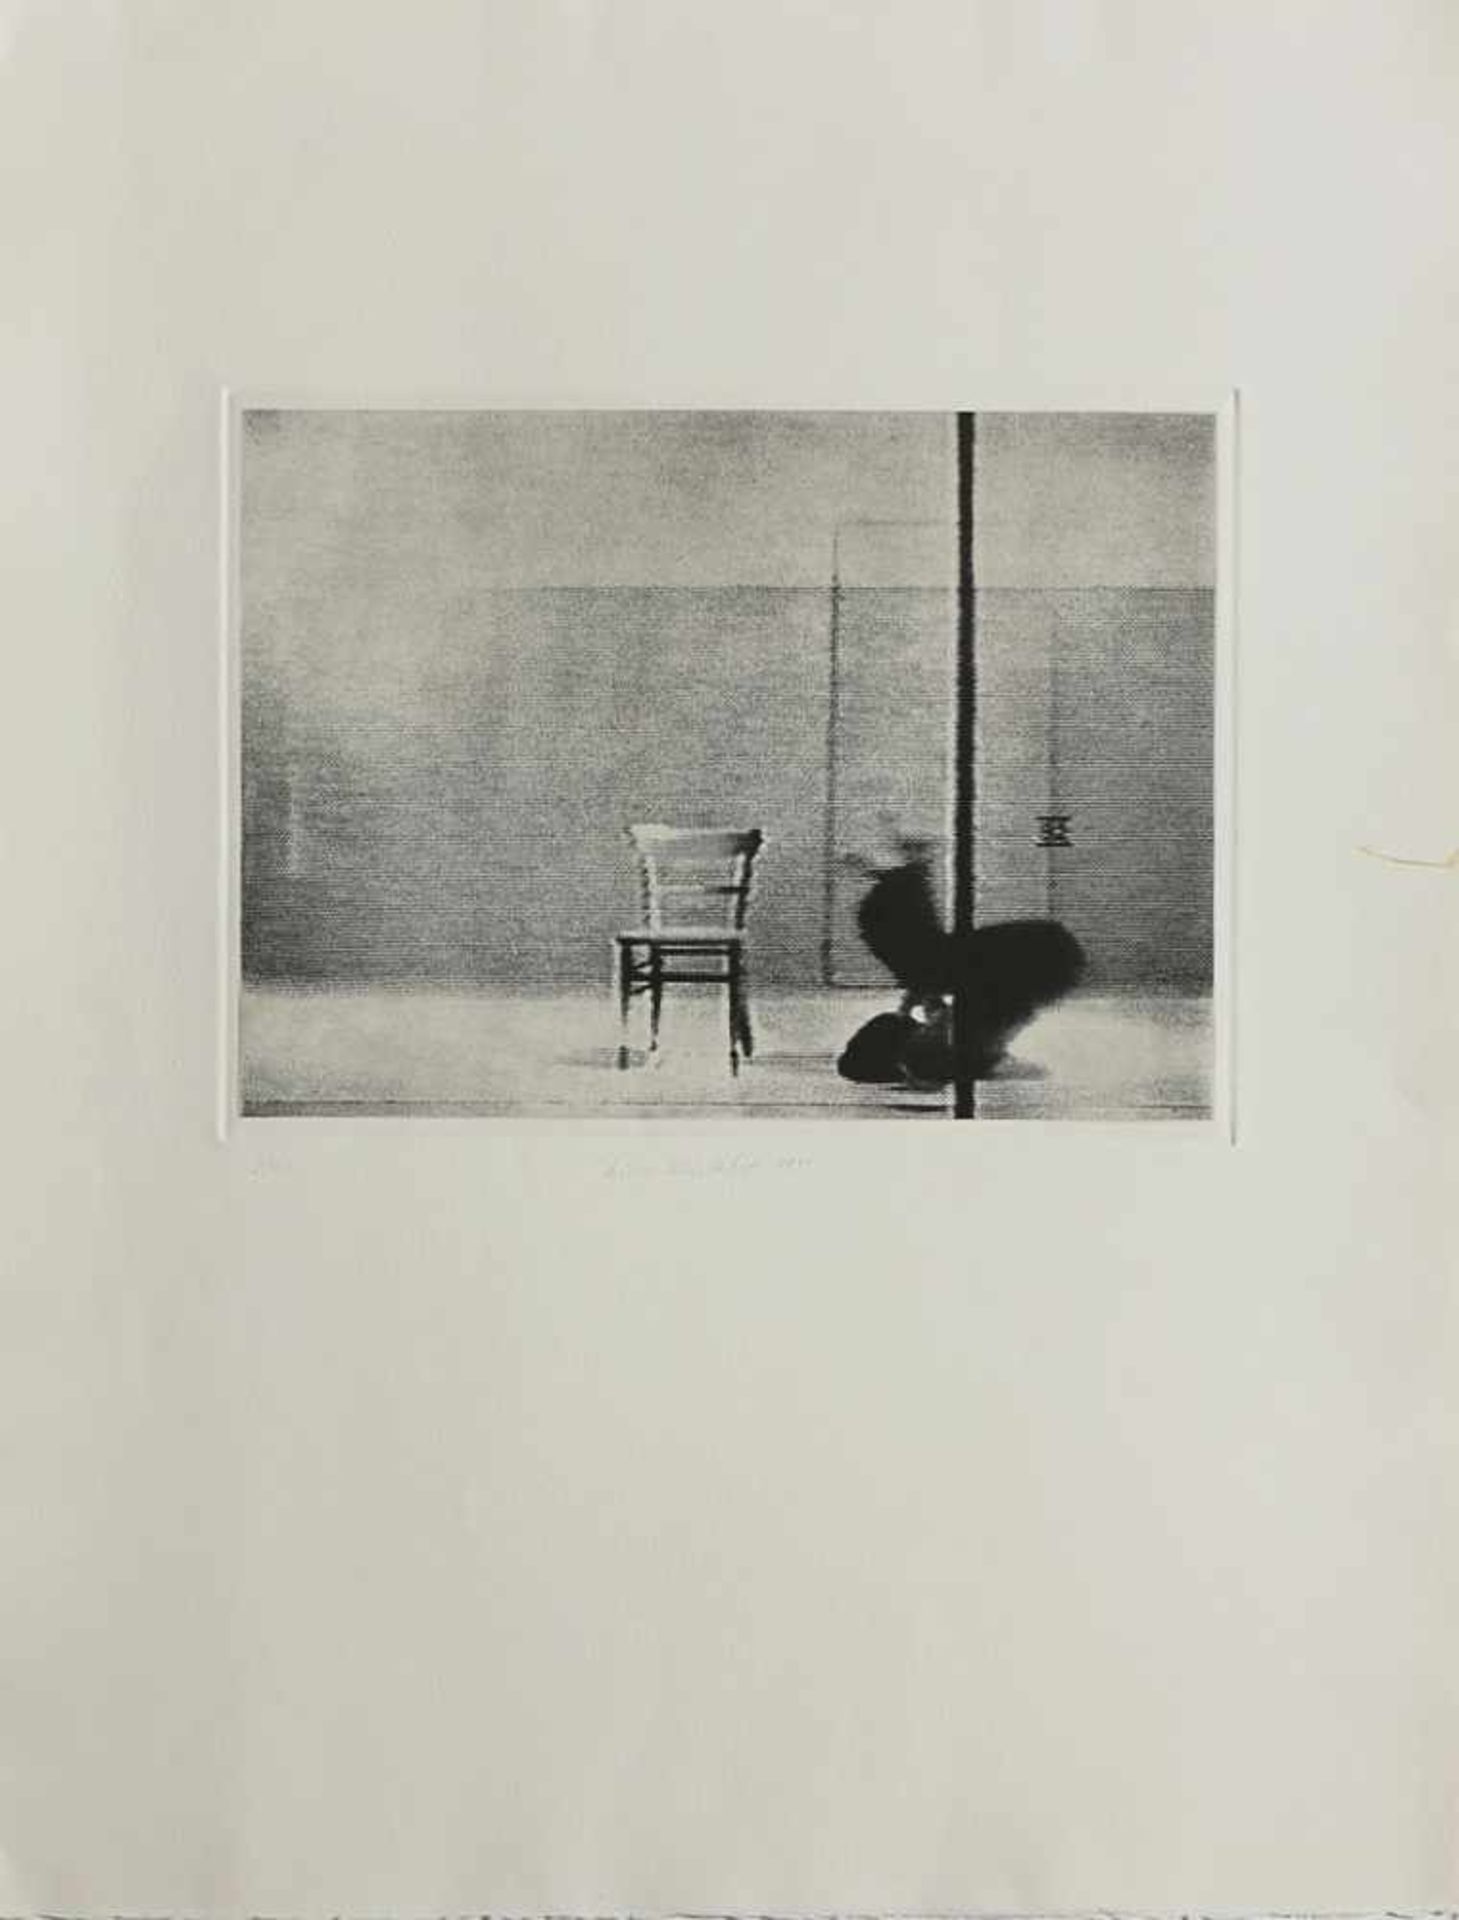 Winterhoff, Lissy geb. 1953 in Schwelm, Studium an der Fachhochschule für Kunst u. Design Köln bei